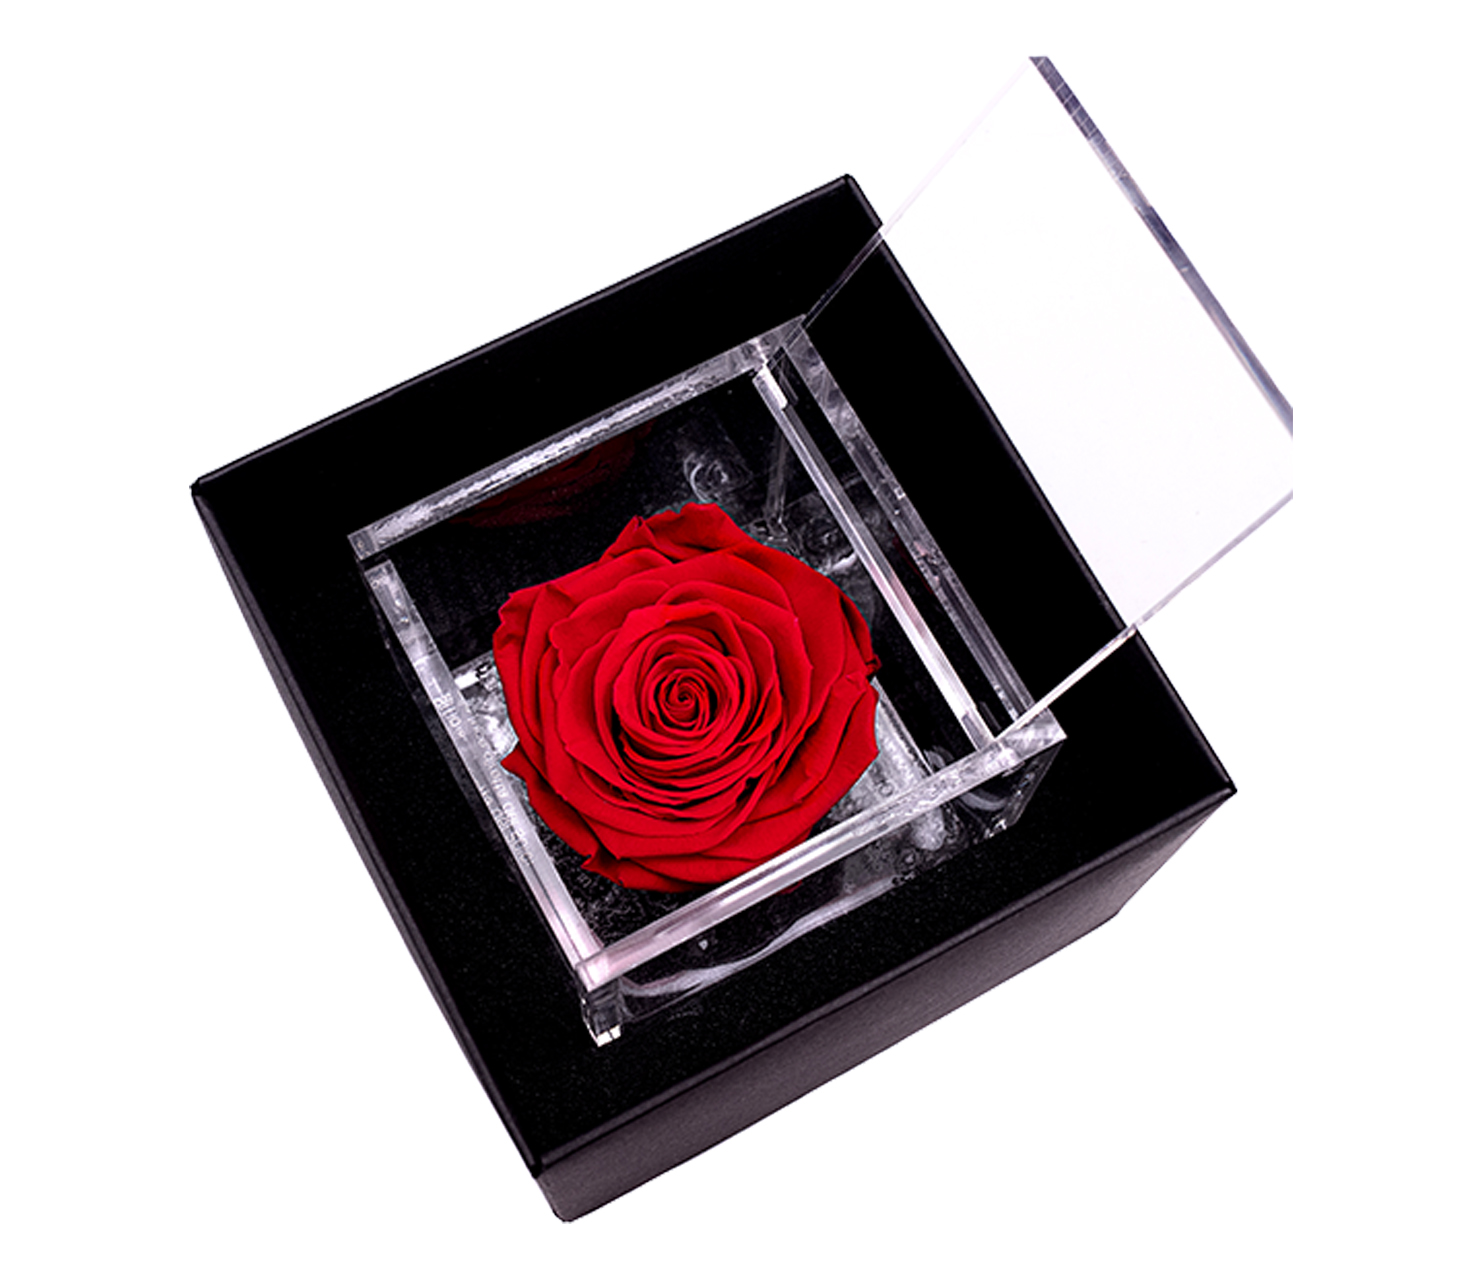 Rosa Stabilizzata - Atelier Flower Shop - Acquista e Consegna fiori -  Lamezia Terme